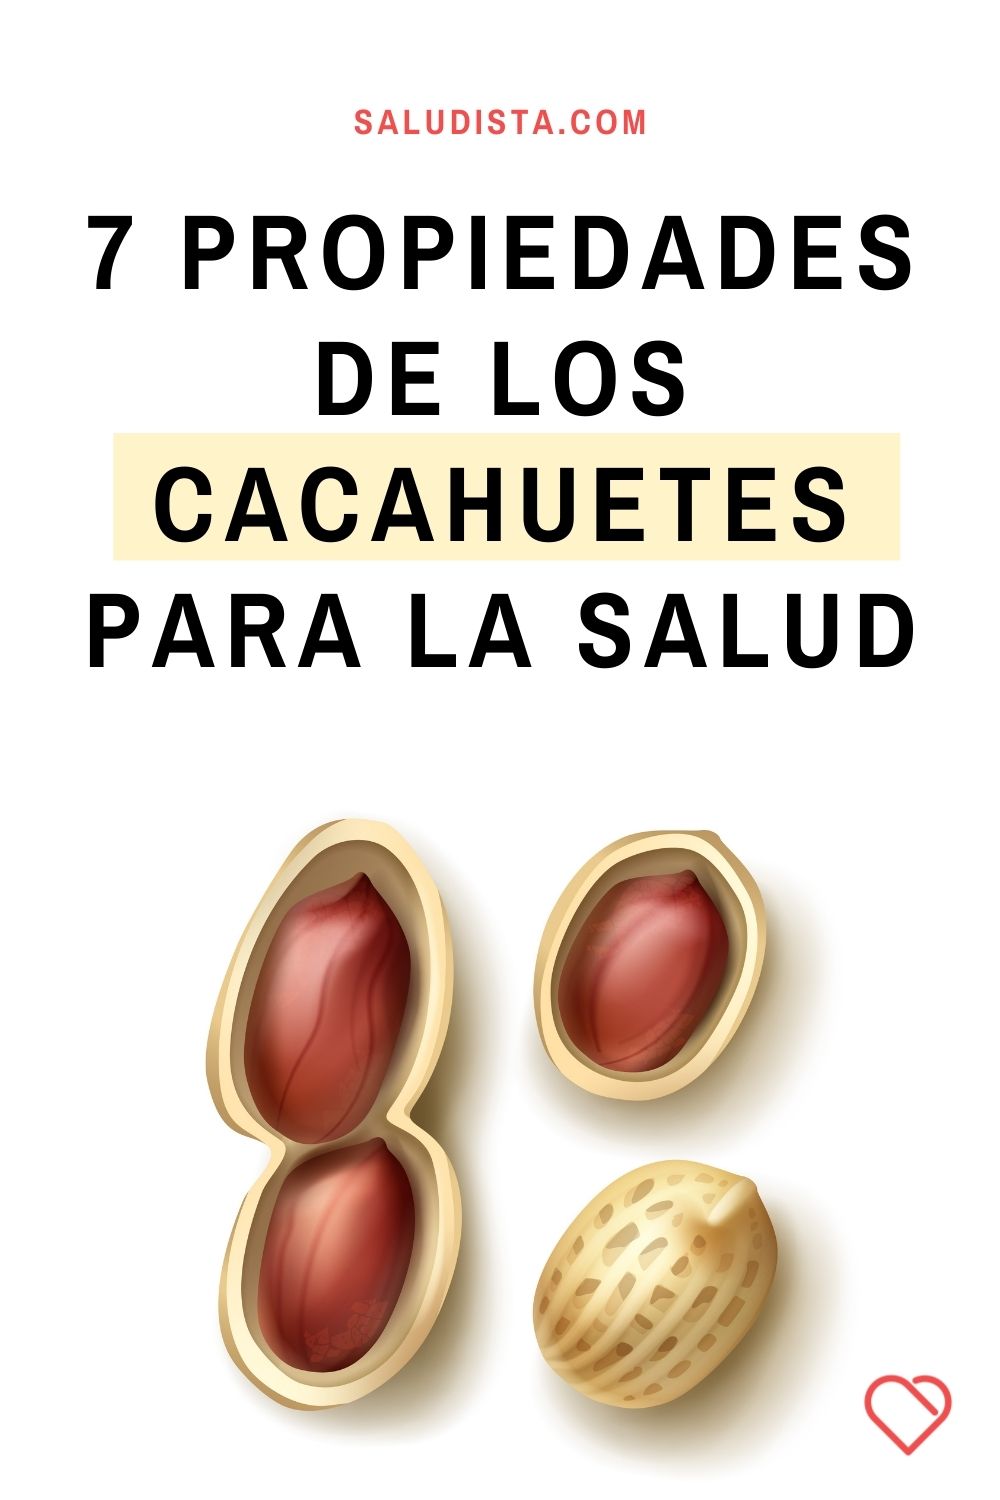 7 Propiedades de los cacahuetes para la salud